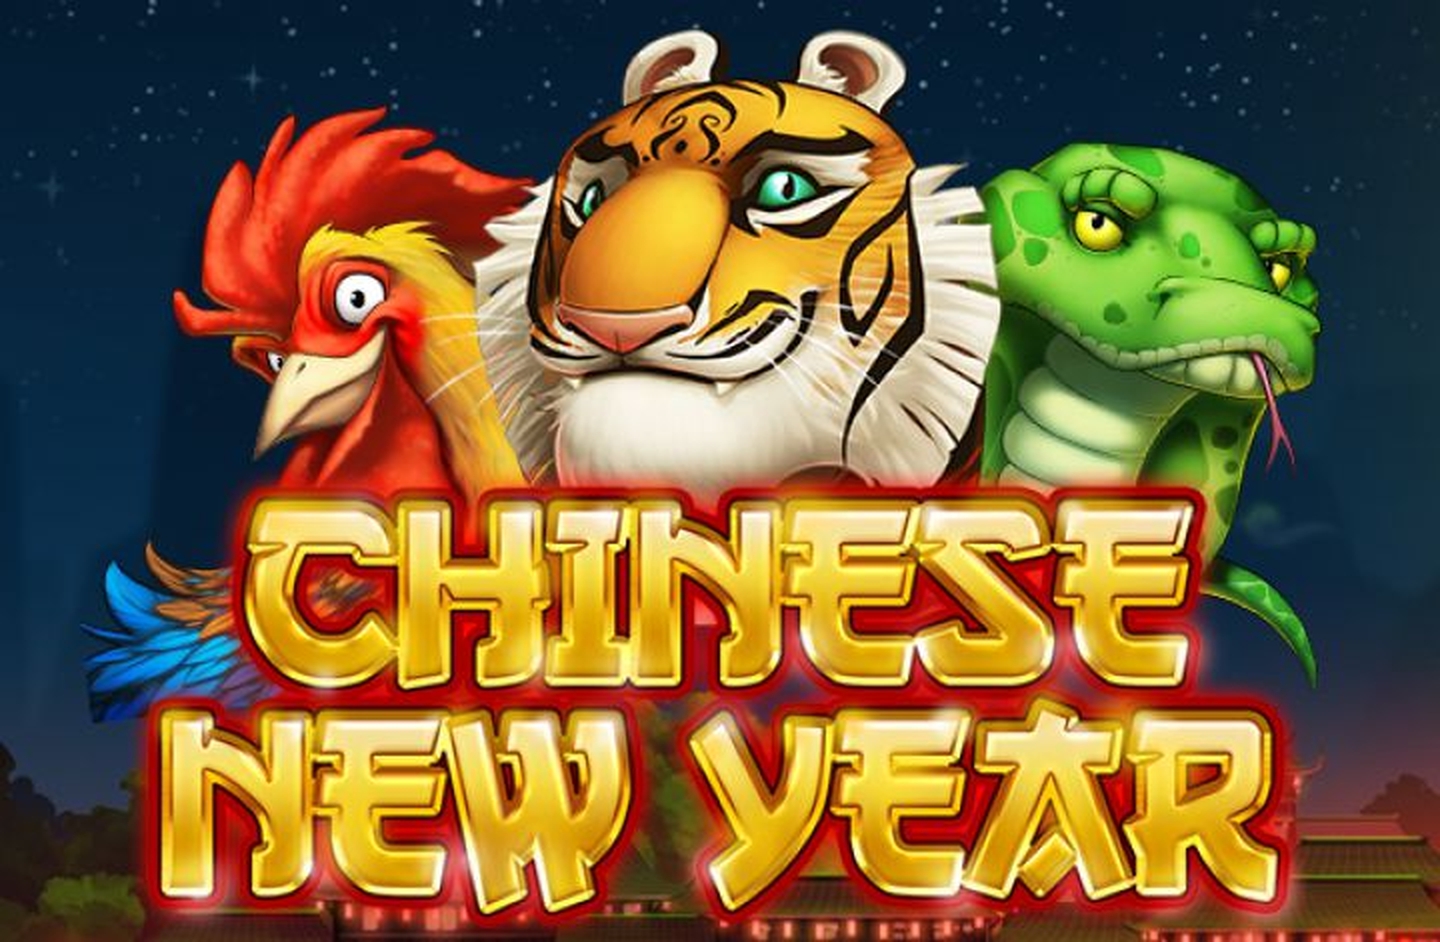 Chinese New Year demo